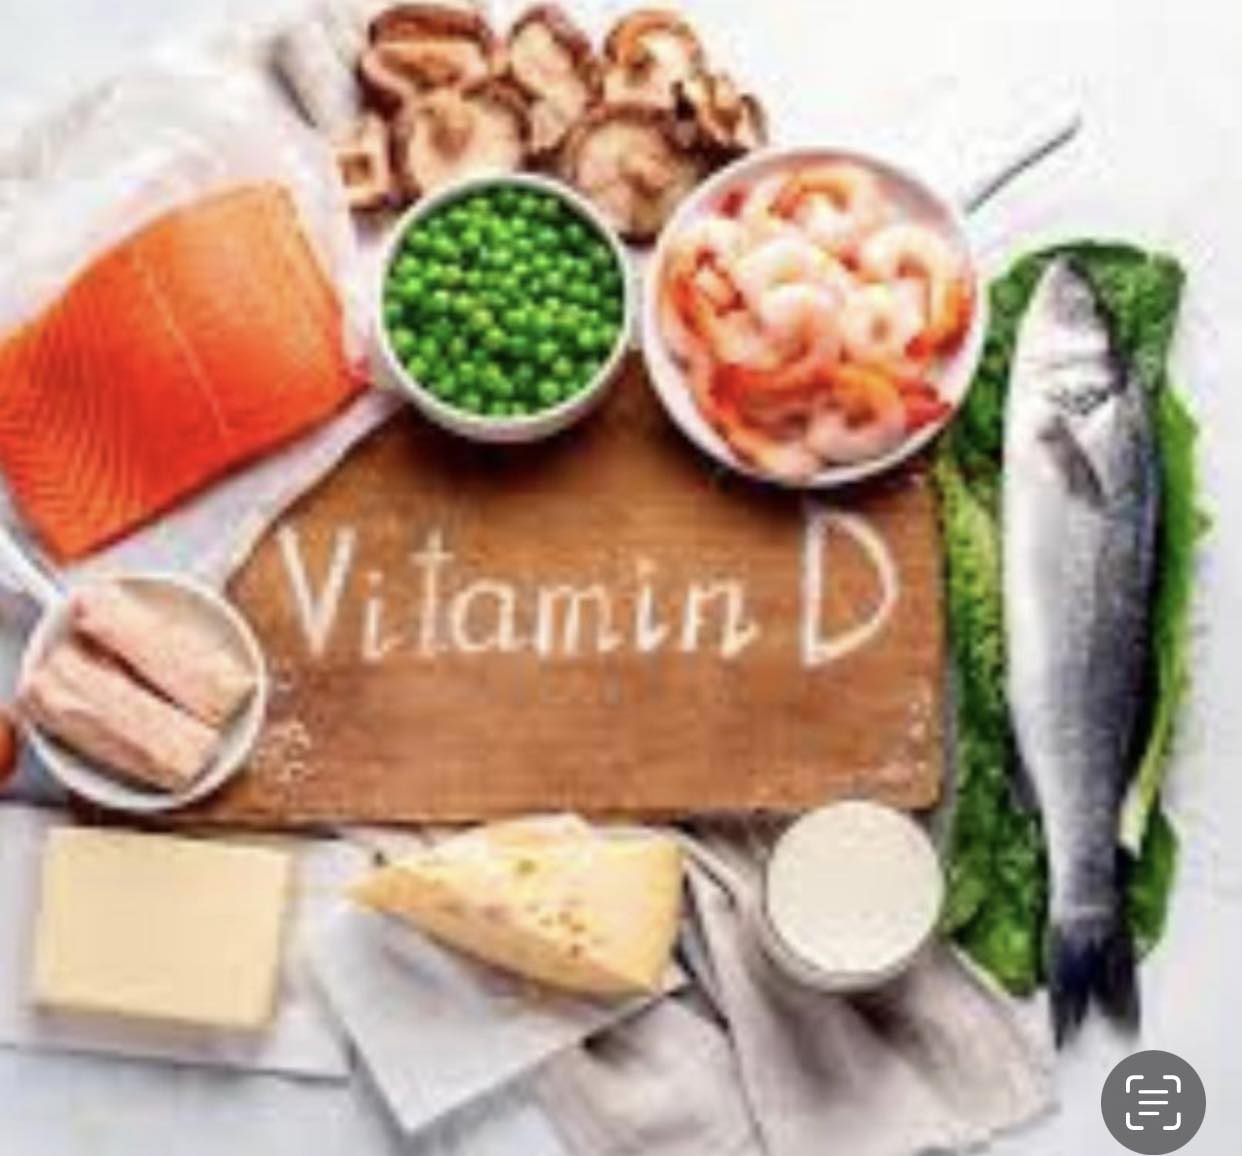 cibi che contengono una dose alta di vitamina D, quali: spigola, gamberi, formaggio, salmone, piselli, funghi